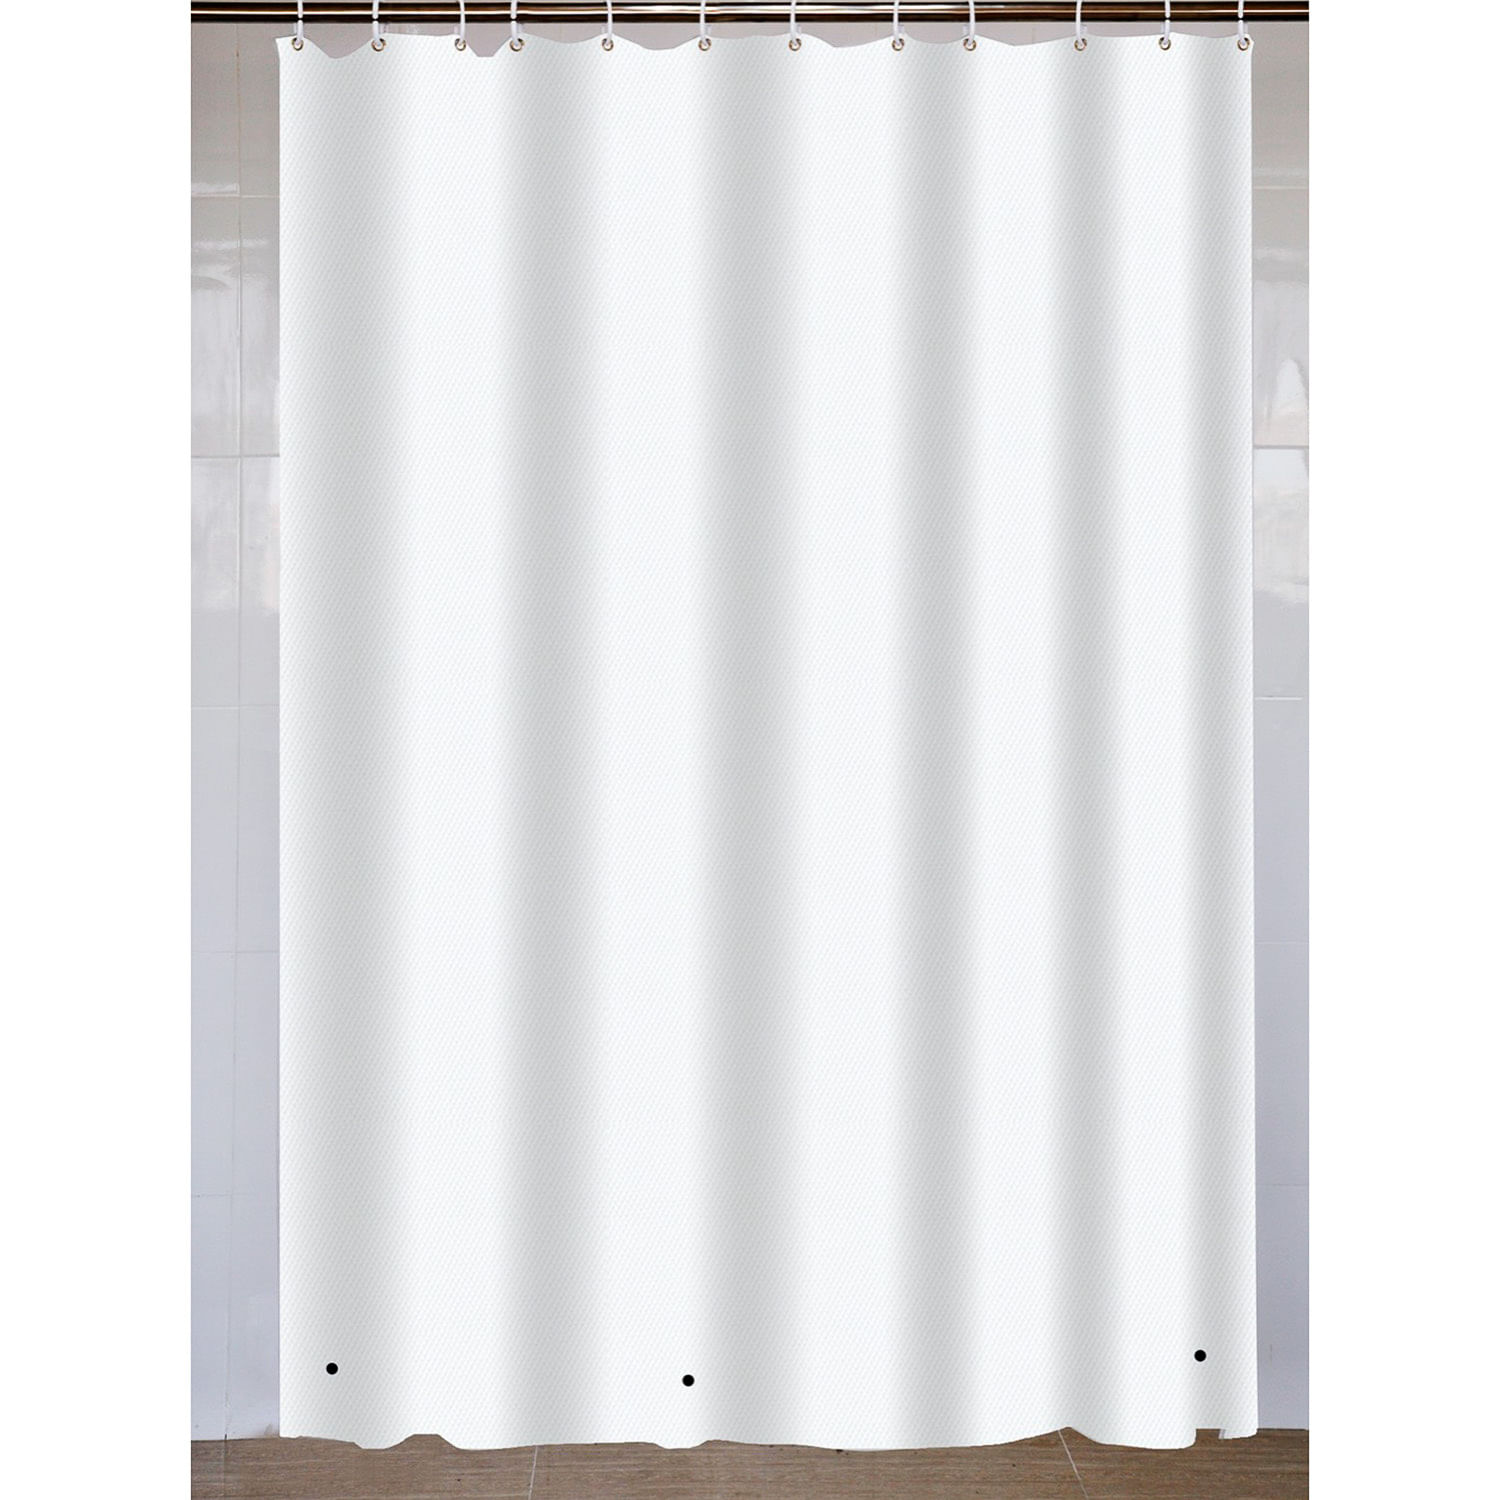 Cortina de ducha de 180 x 180 cm con 12 anillas de cortina de ducha antimoho para bañera y ducha color gris de poliéster impermeable 